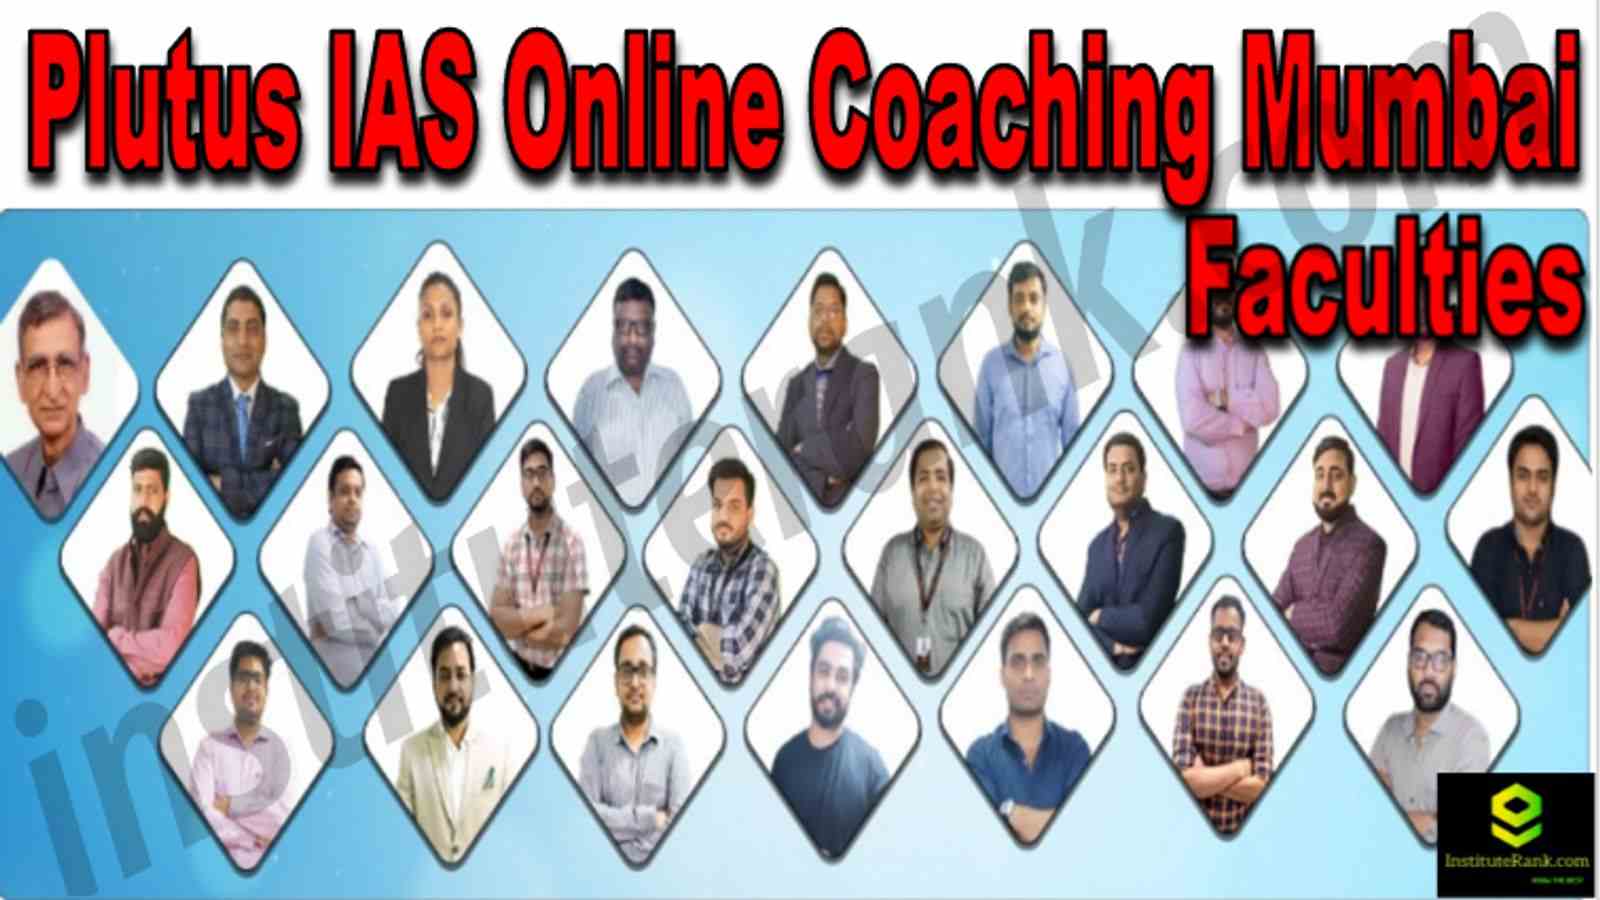 Plutus IAS Online Coaching Mumbai Reviews Faculties